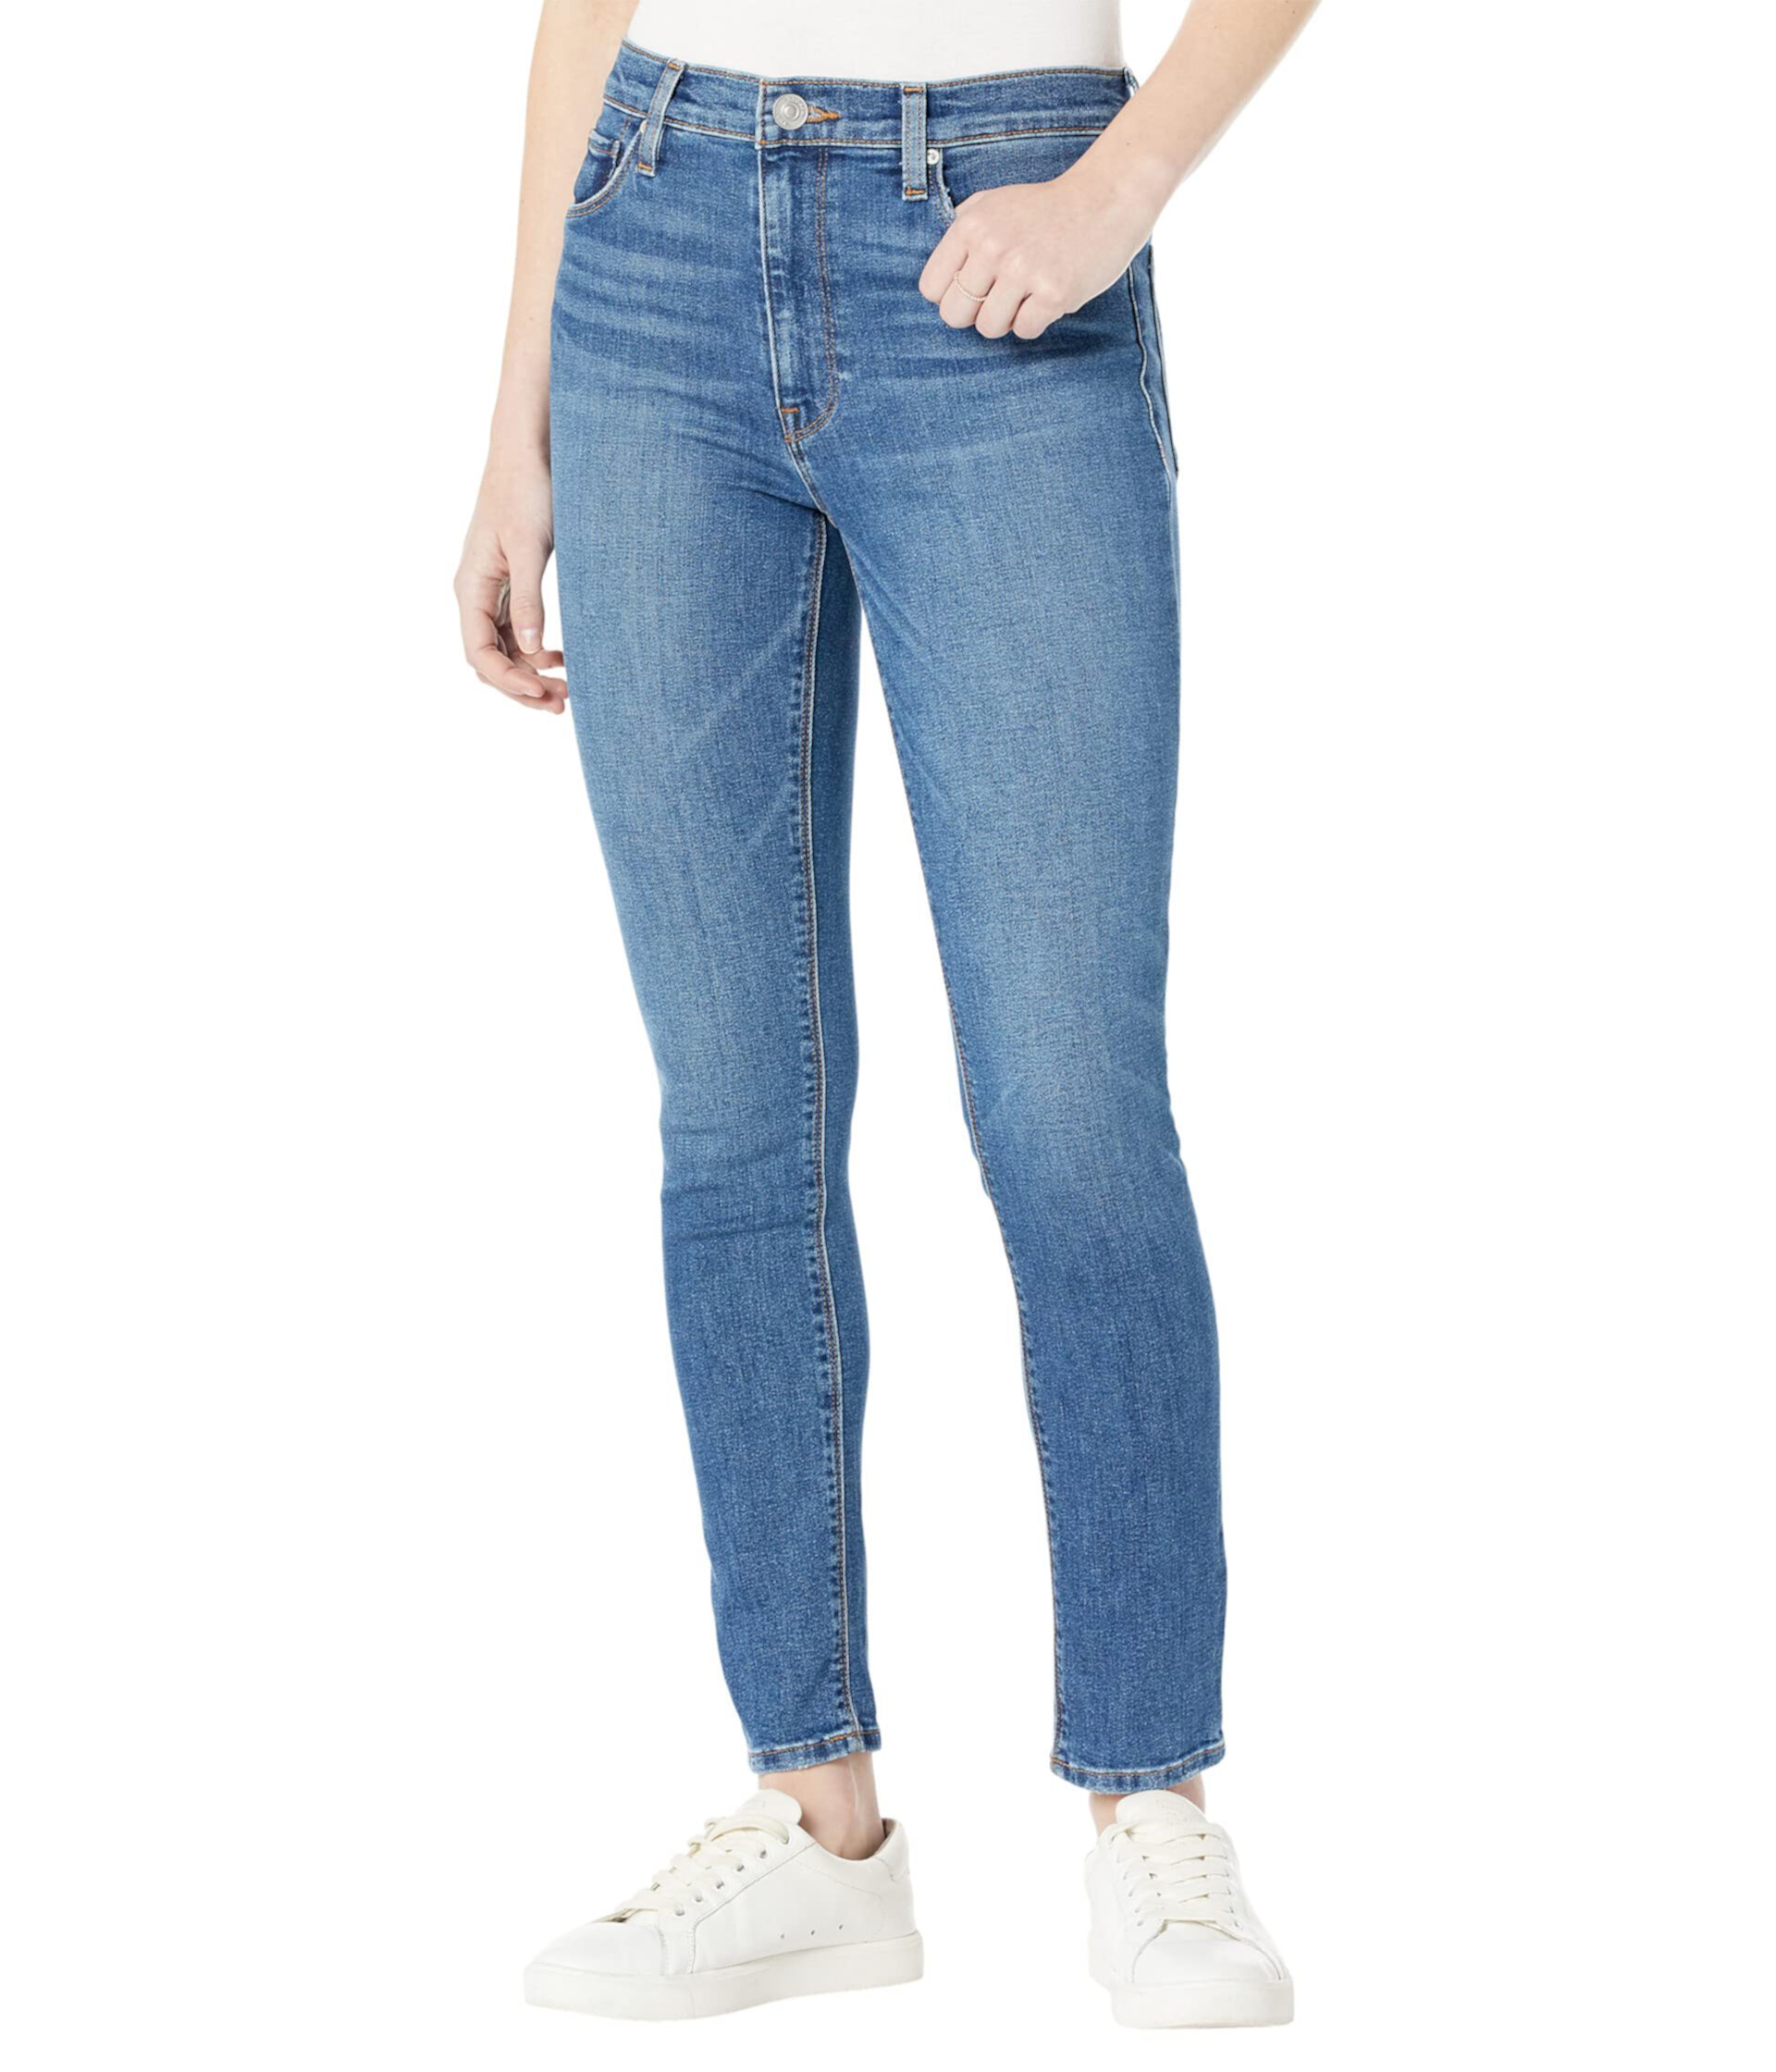 Суперузкие лодыжки Barbara с высокой талией в цвете Titan Hudson Jeans